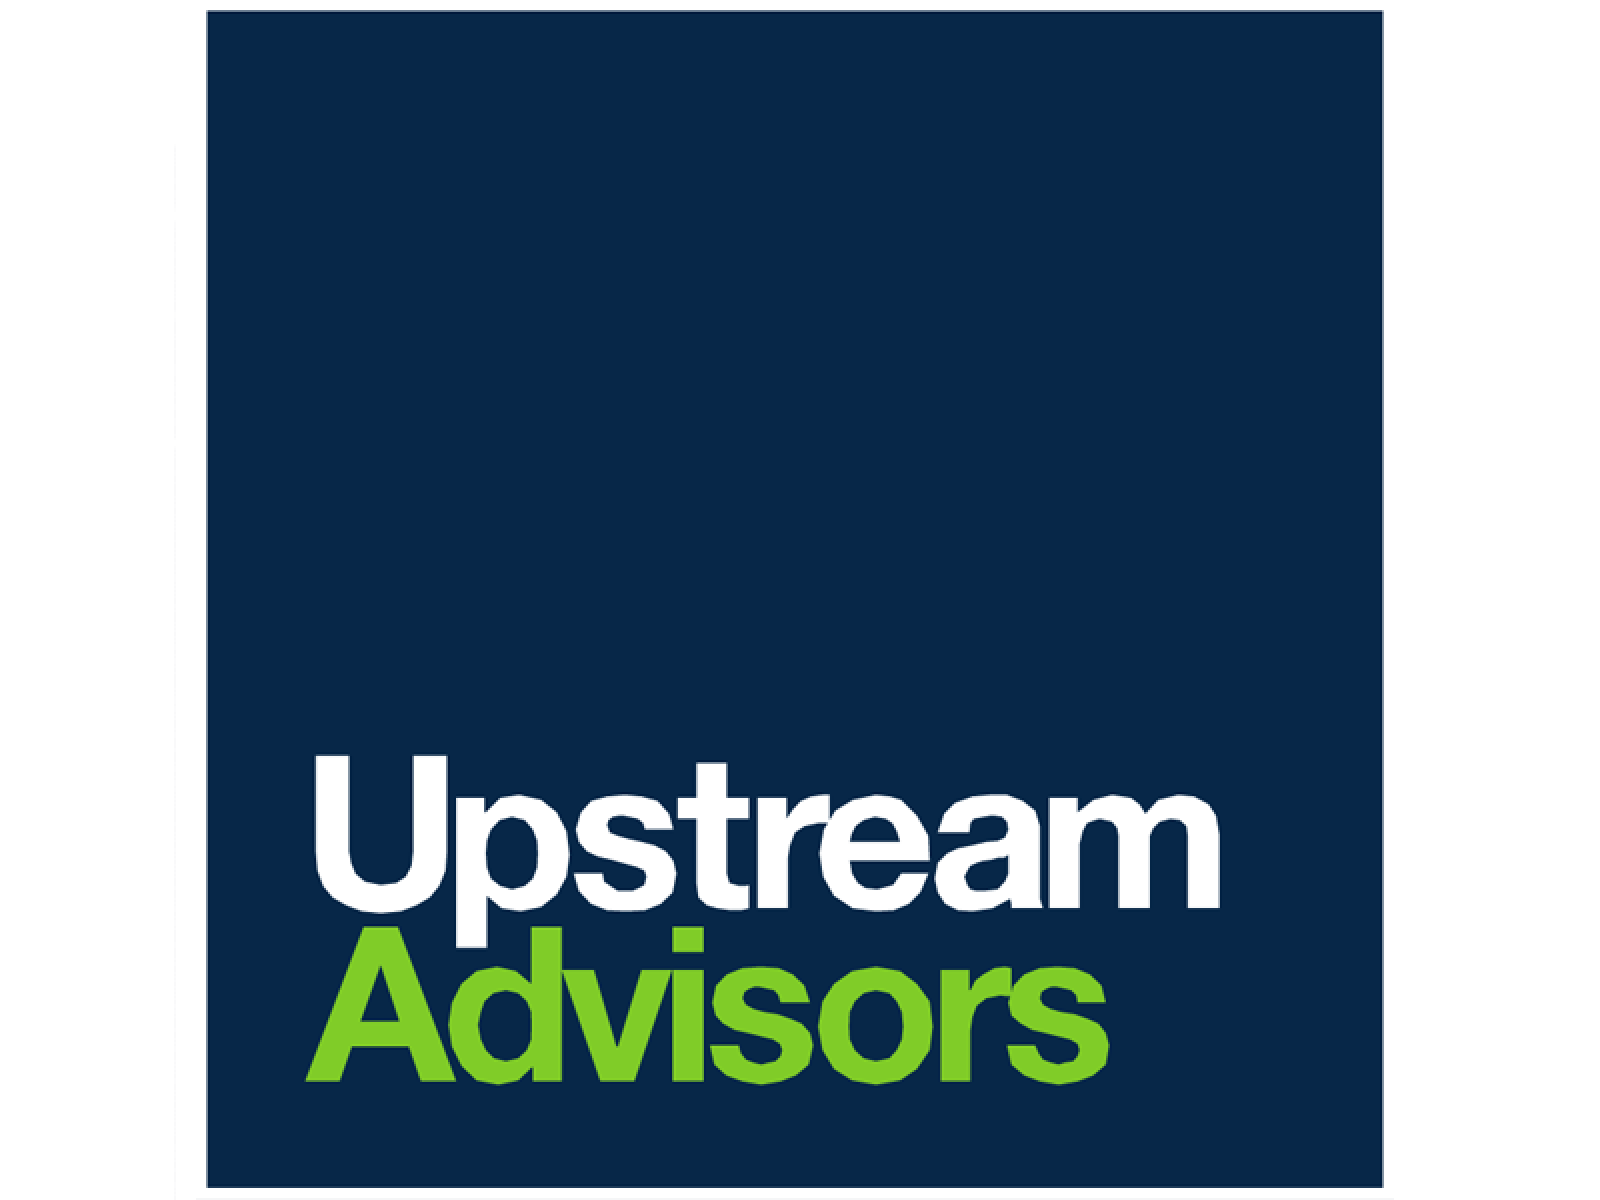 Upstream Advisors